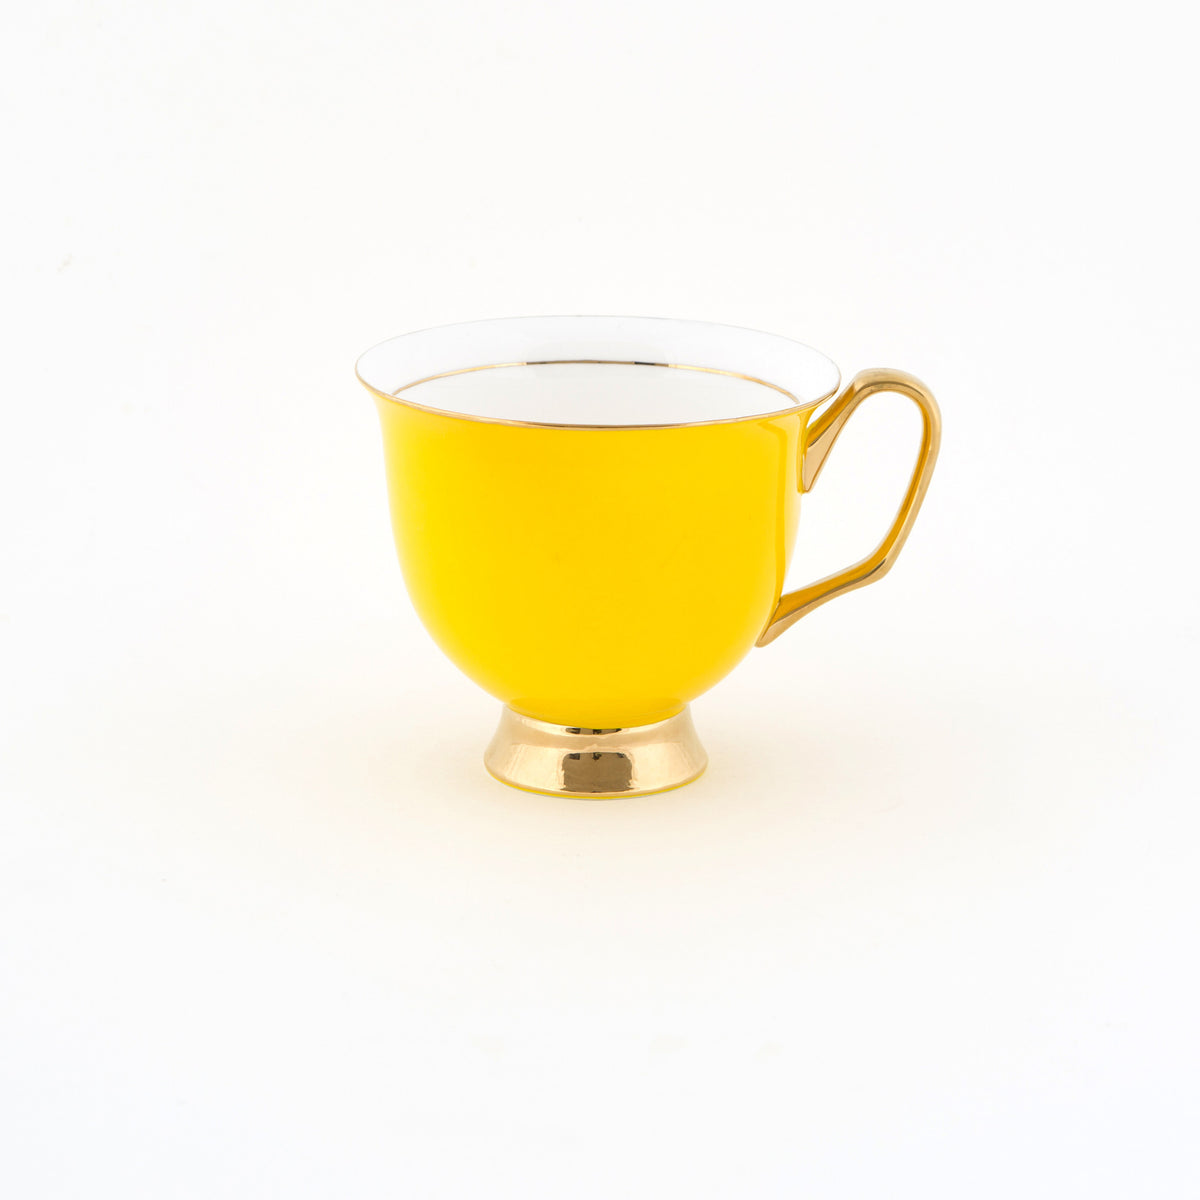 XL Yellow Teacup and Saucer